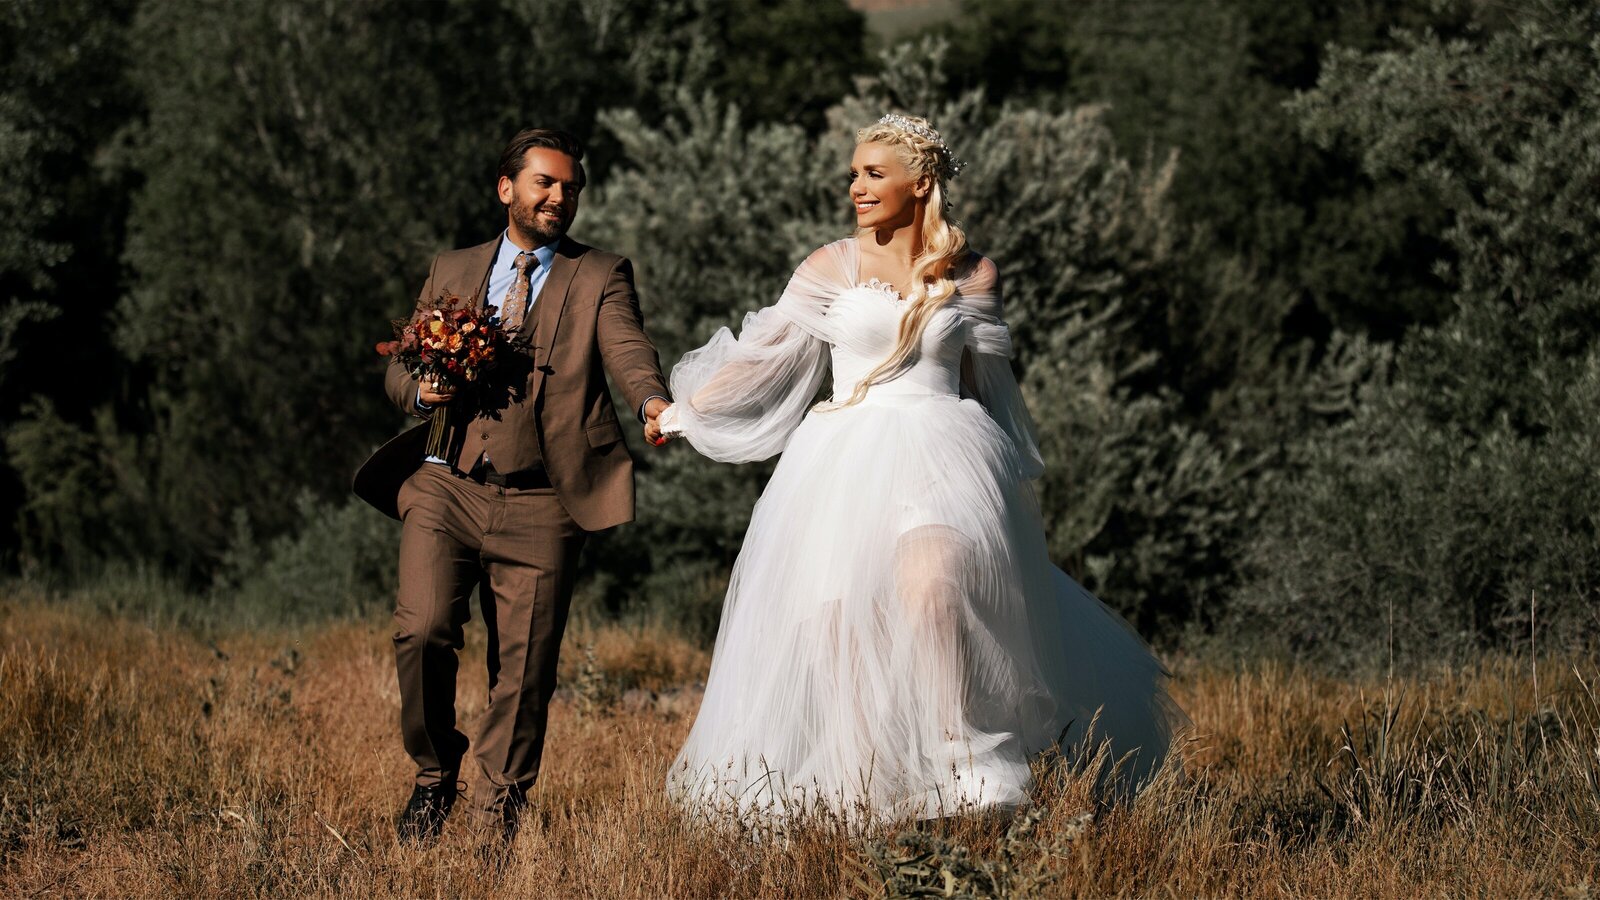 bride-and-groom-walking-in-field-2907680